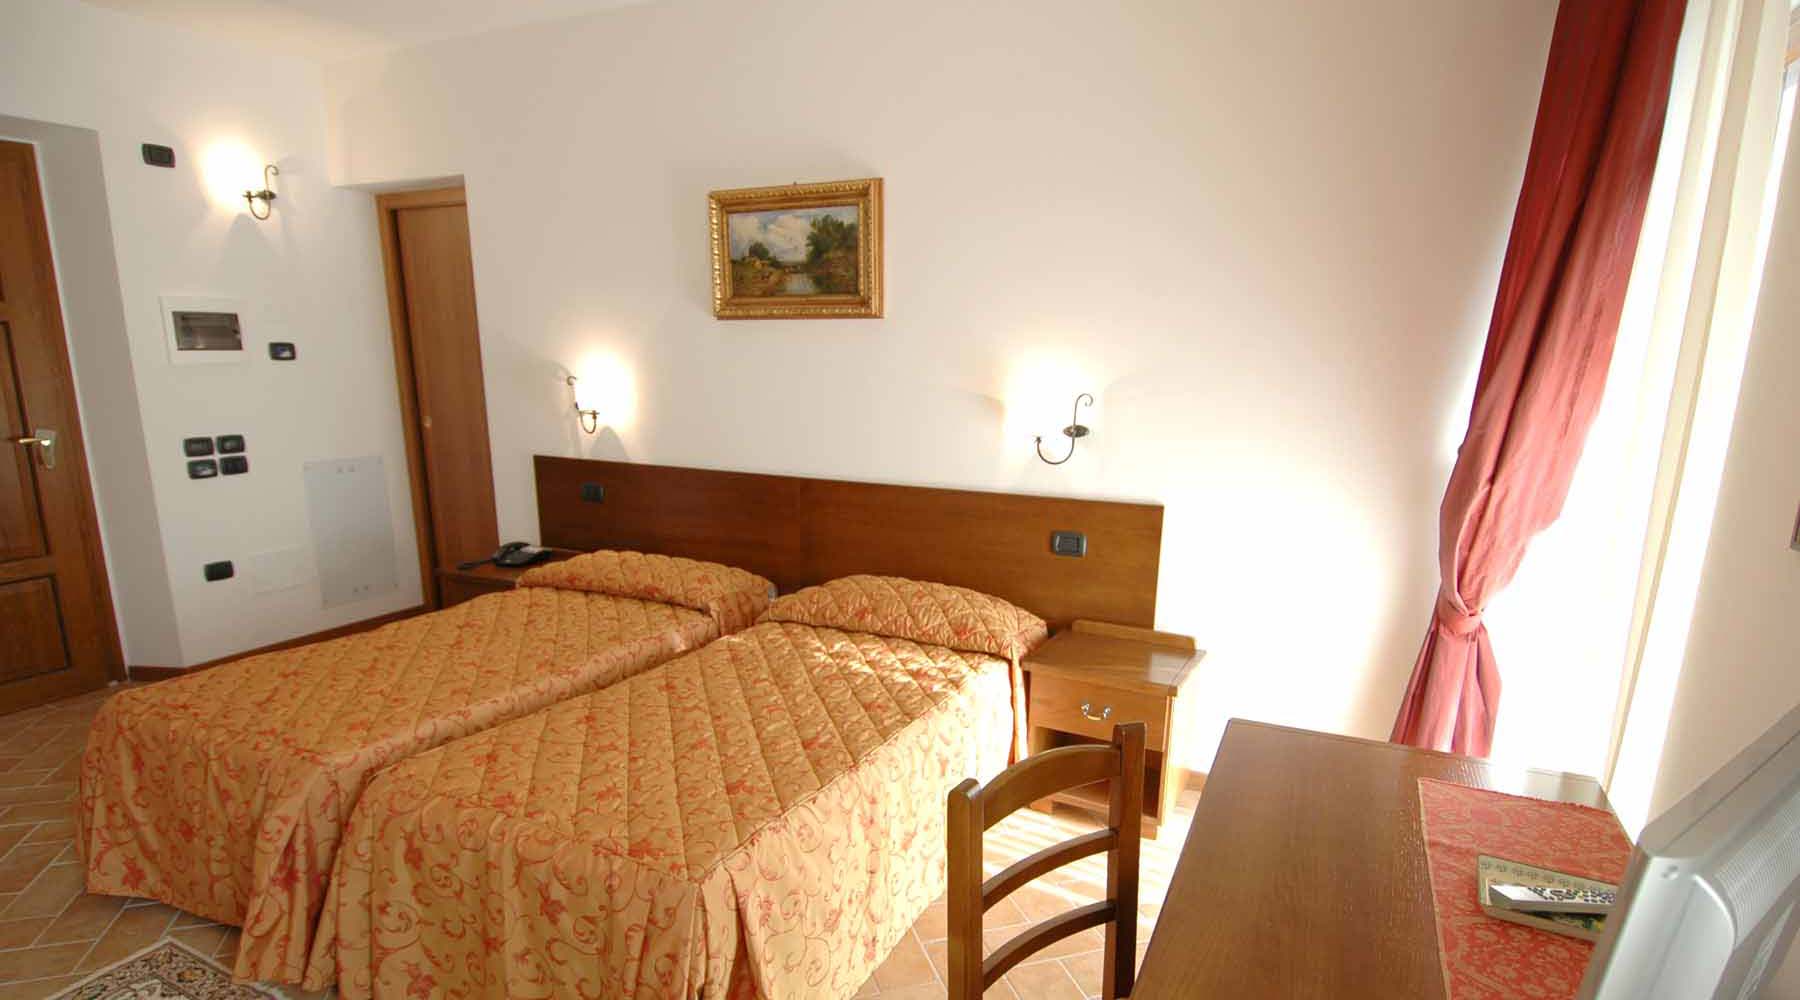 Camera Singola / Doppia uso singola Albergo - Hotel - Urbino - Marche